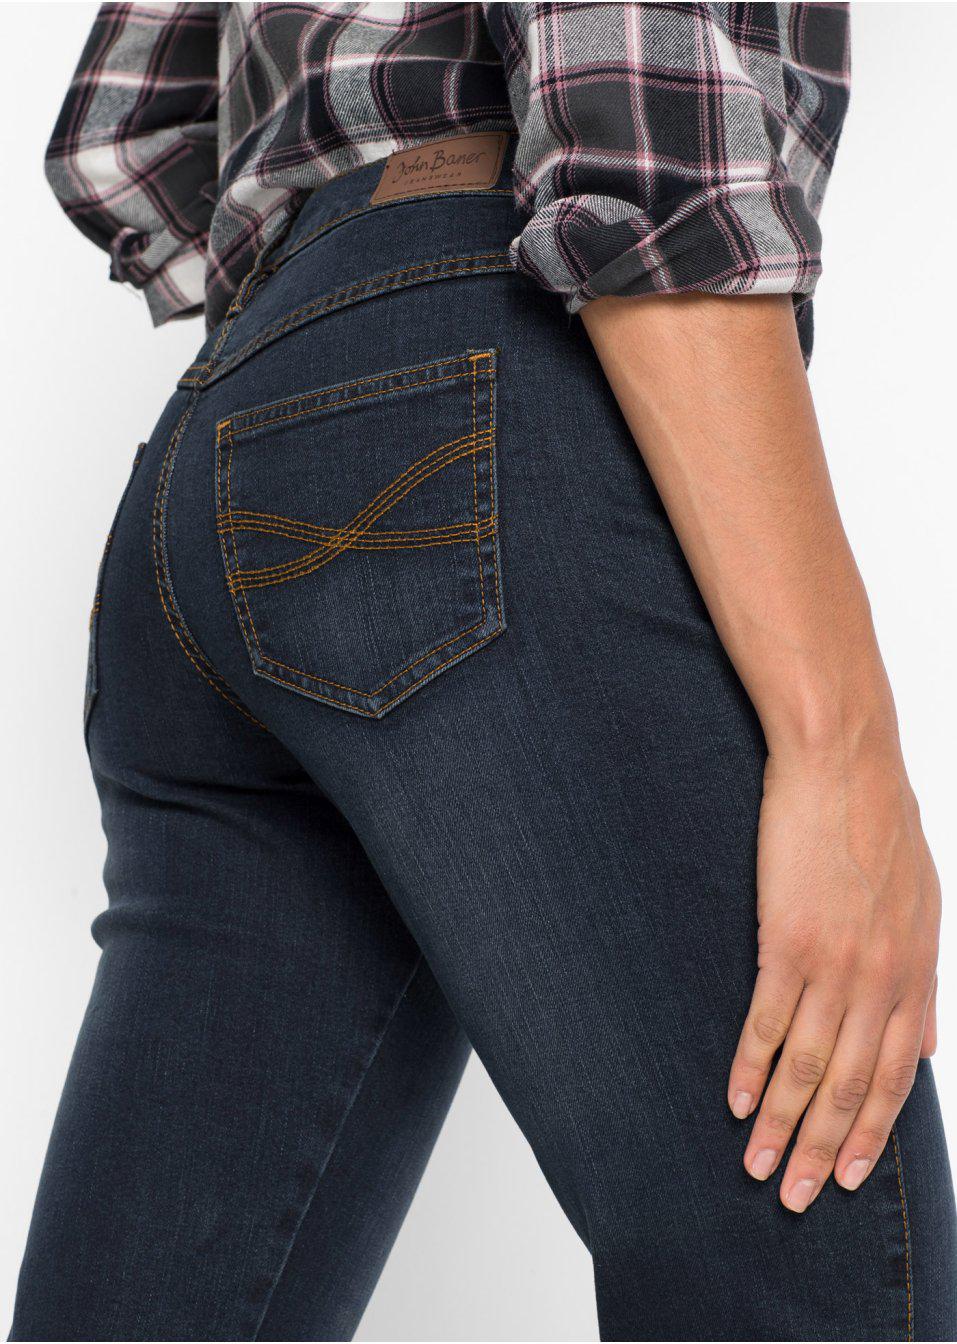 spodnie jeans Bootcut dzwony kieszenie